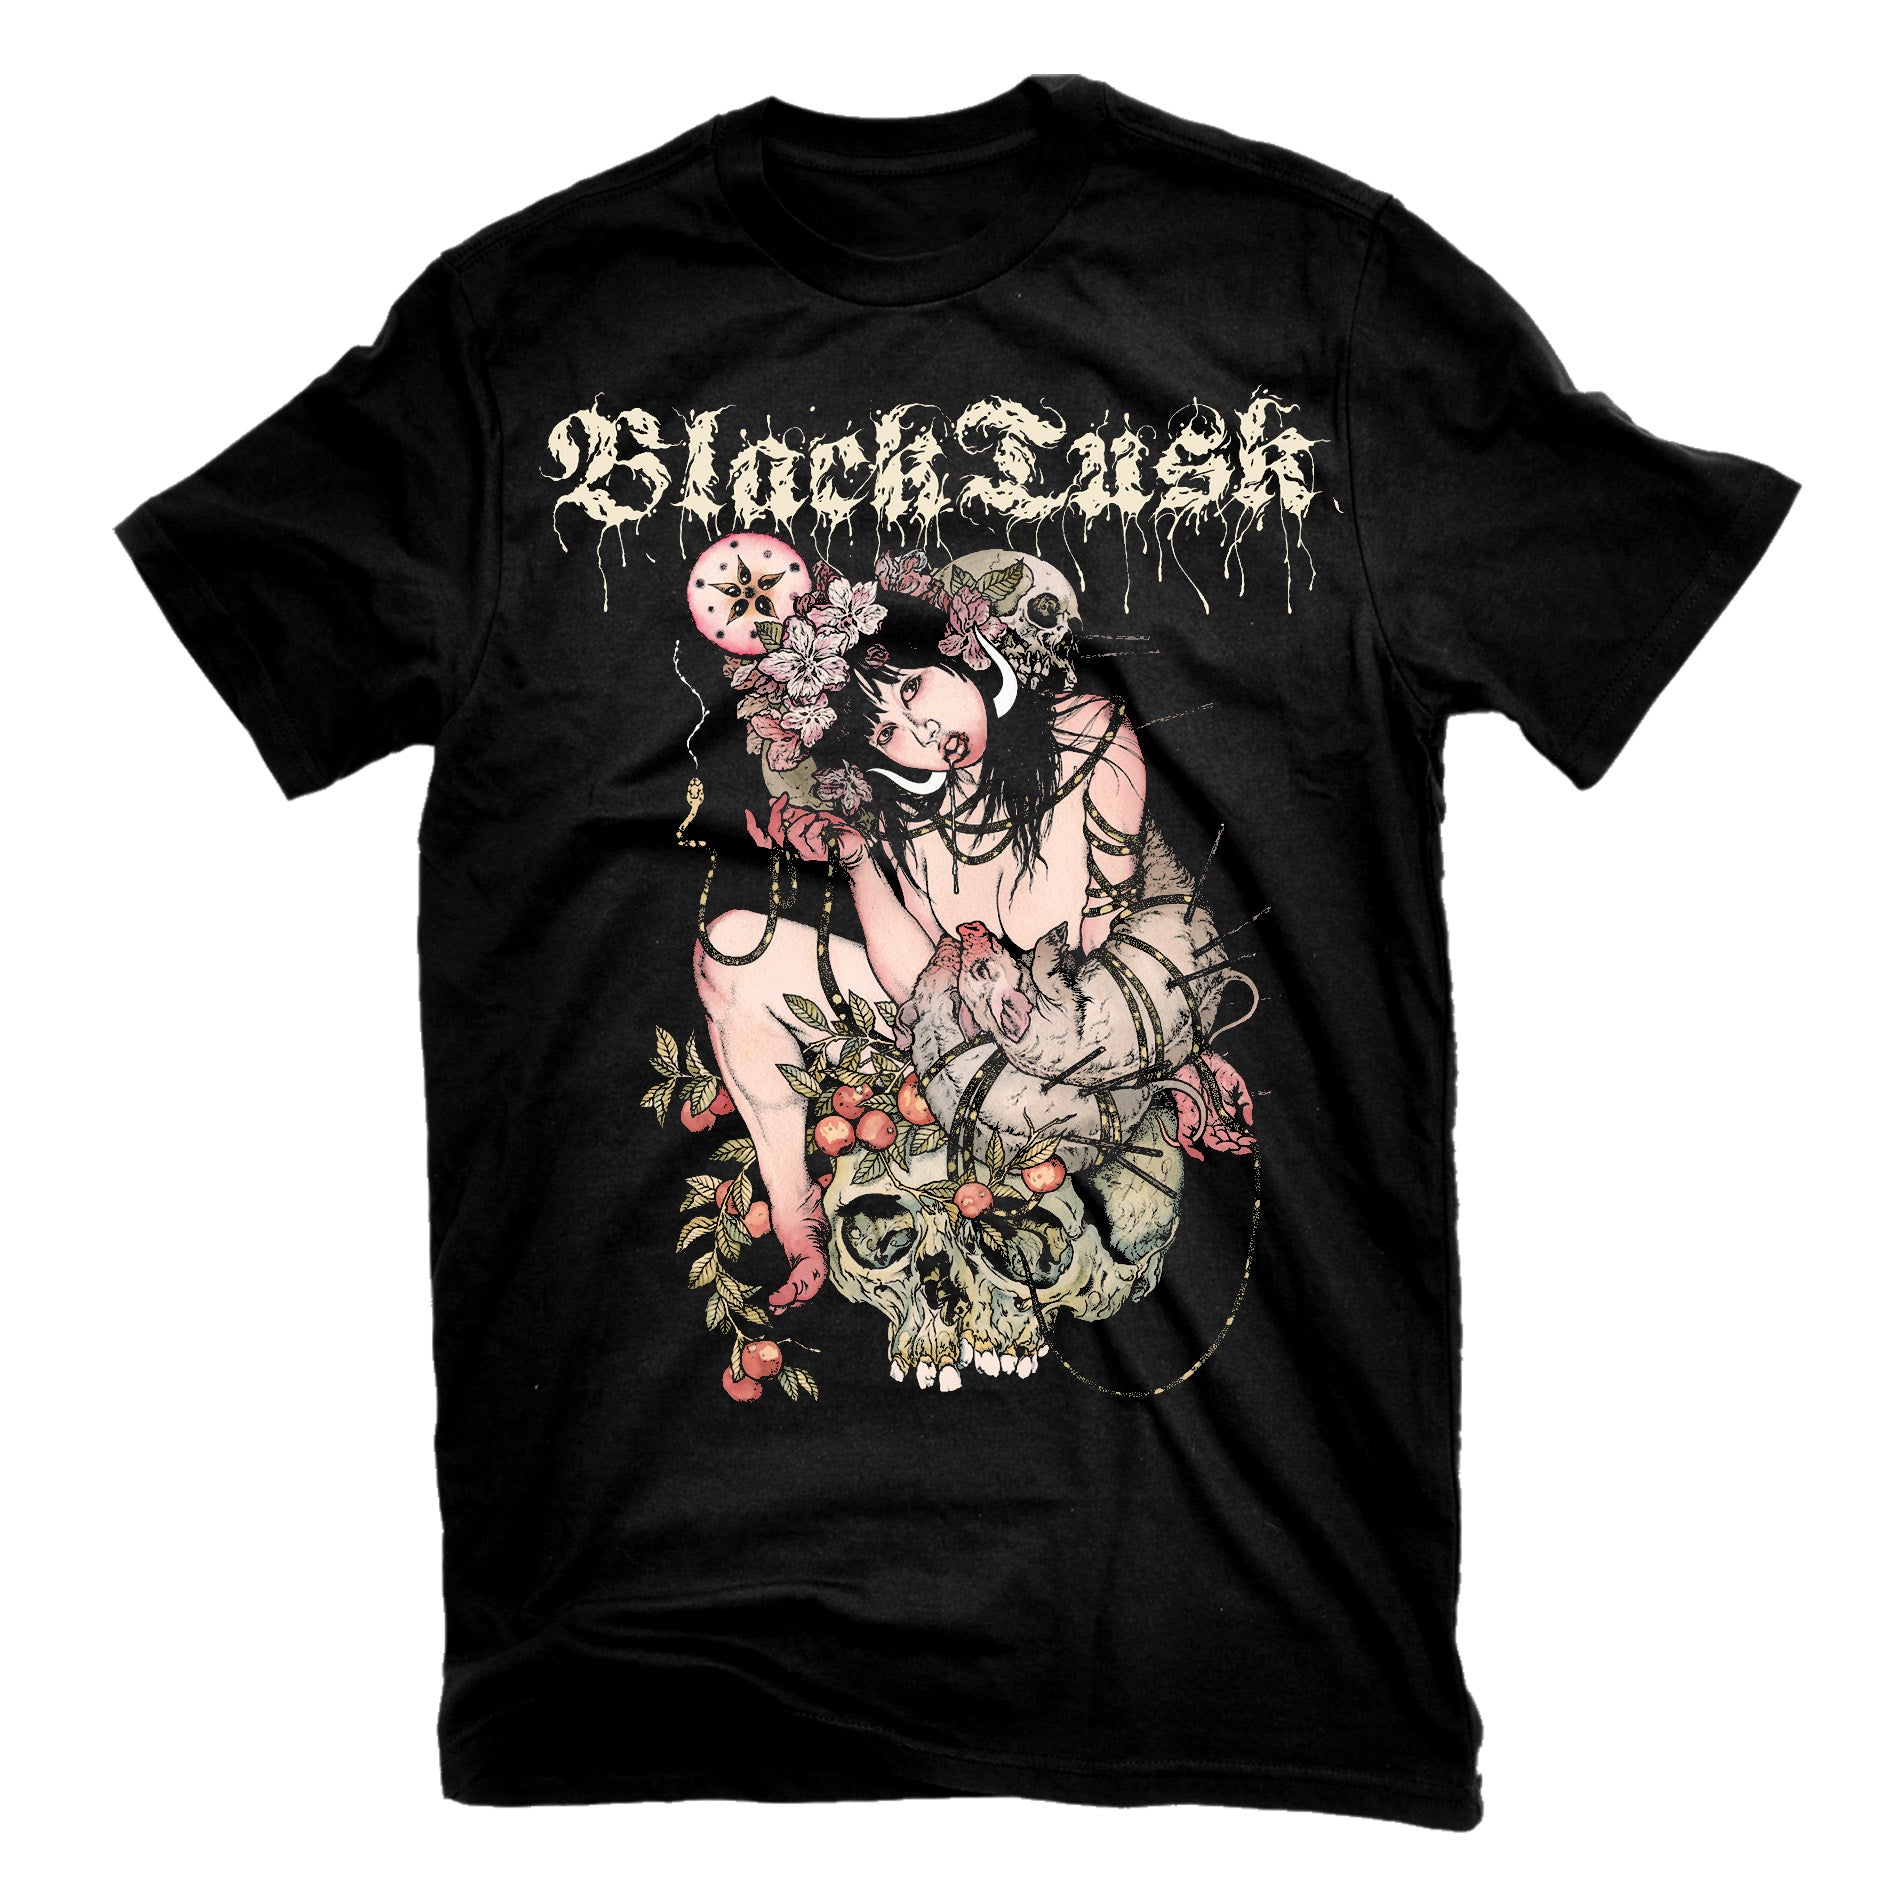 Black Tusk "Taste The Sin" T-Shirt